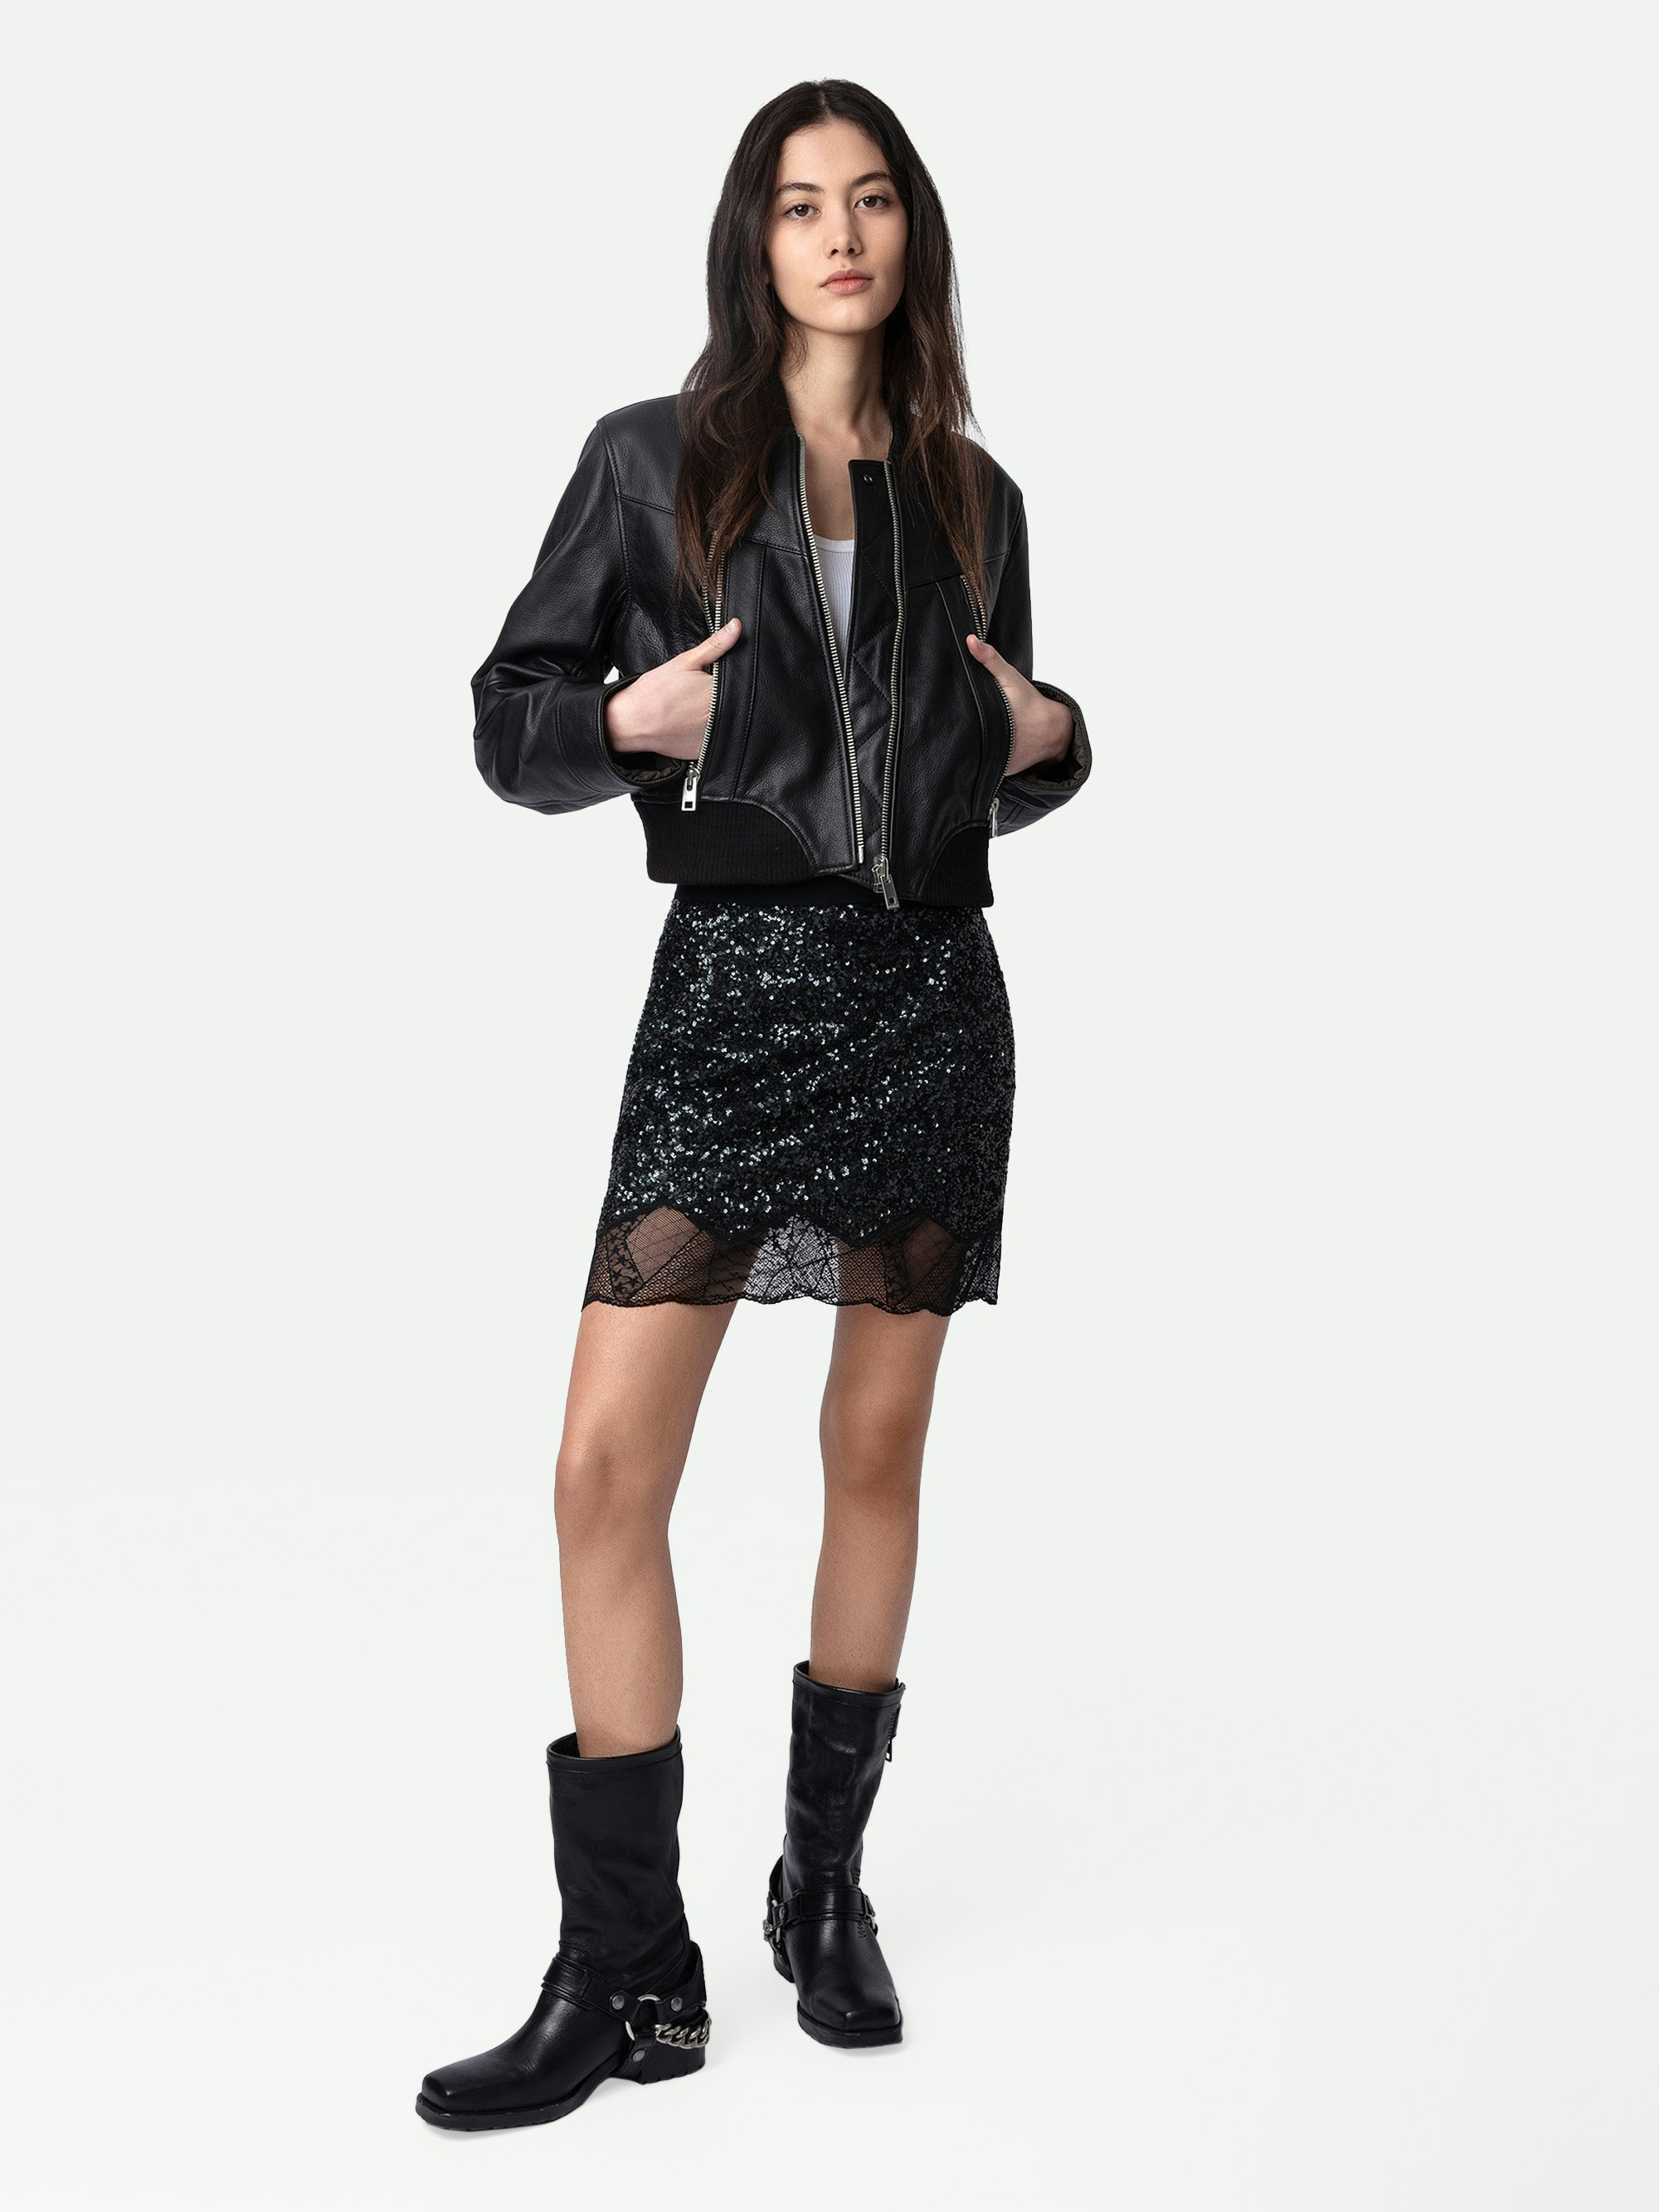 Falda de Lentejuelas Justicias - Falda negra corta con cinturilla elástica, lentejuelas y bordes de encaje.